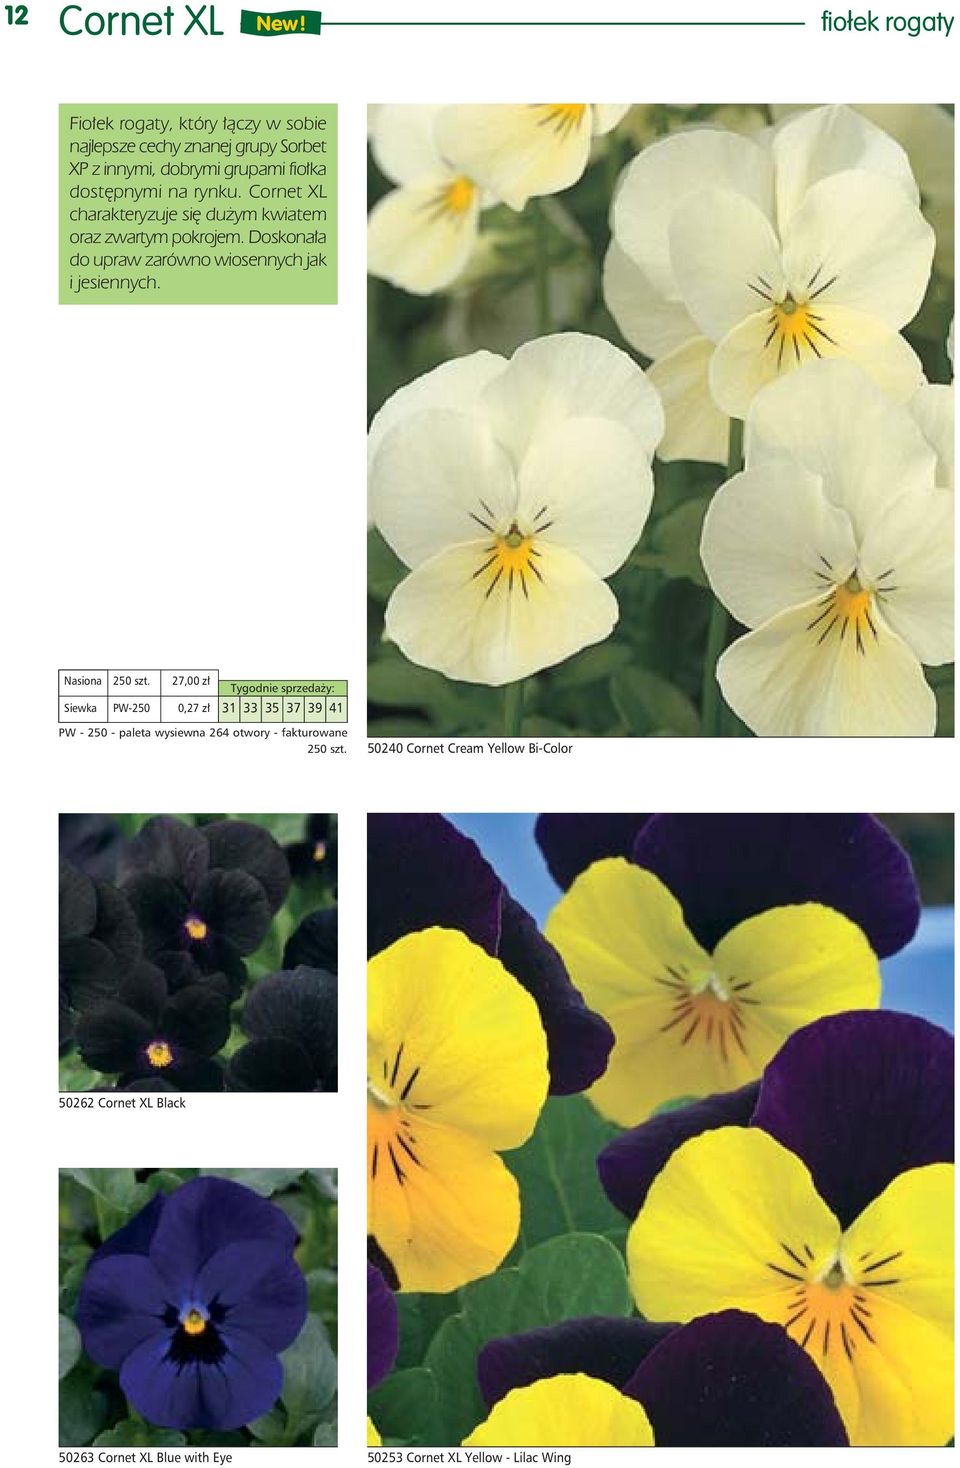 na rynku. Cornet XL charakteryzuje się dużym kwiatem oraz zwartym pokrojem. Doskonała do upraw zarówno wiosennych jak i jesiennych.